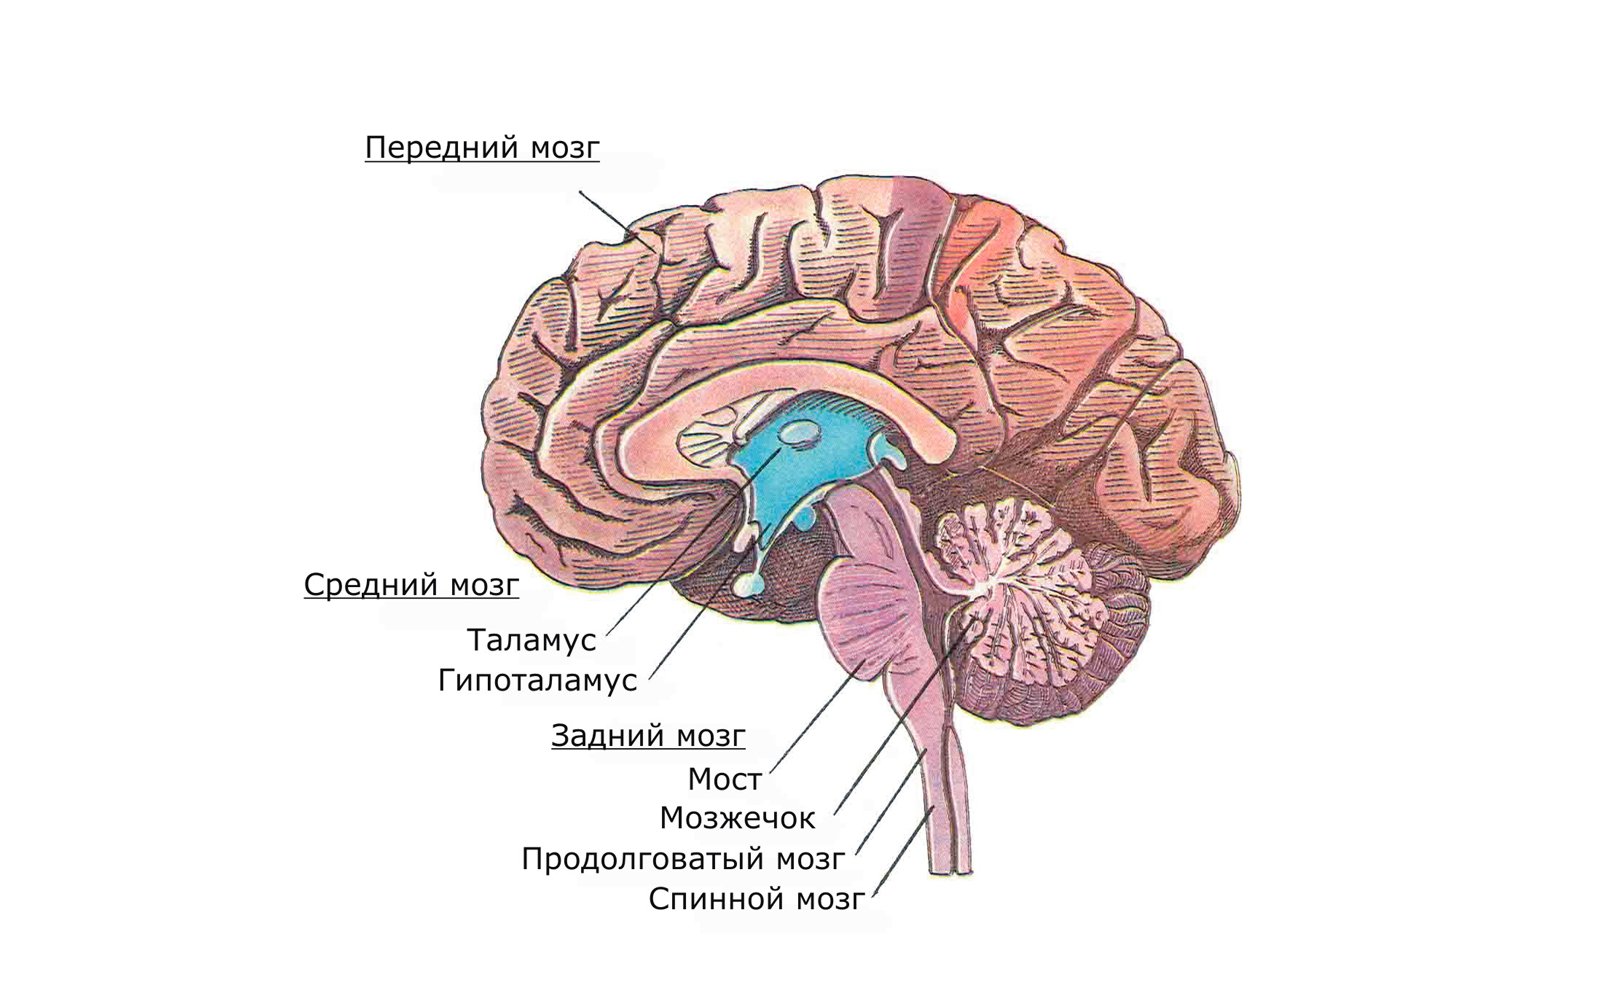 Мост мозга расположен. Головной мозг продолговатый средний задний промежуточный. Головной мозг варолиев мост. Передний мозг мозжечок и ствол мозга. Задний мозг мост и мозжечок.